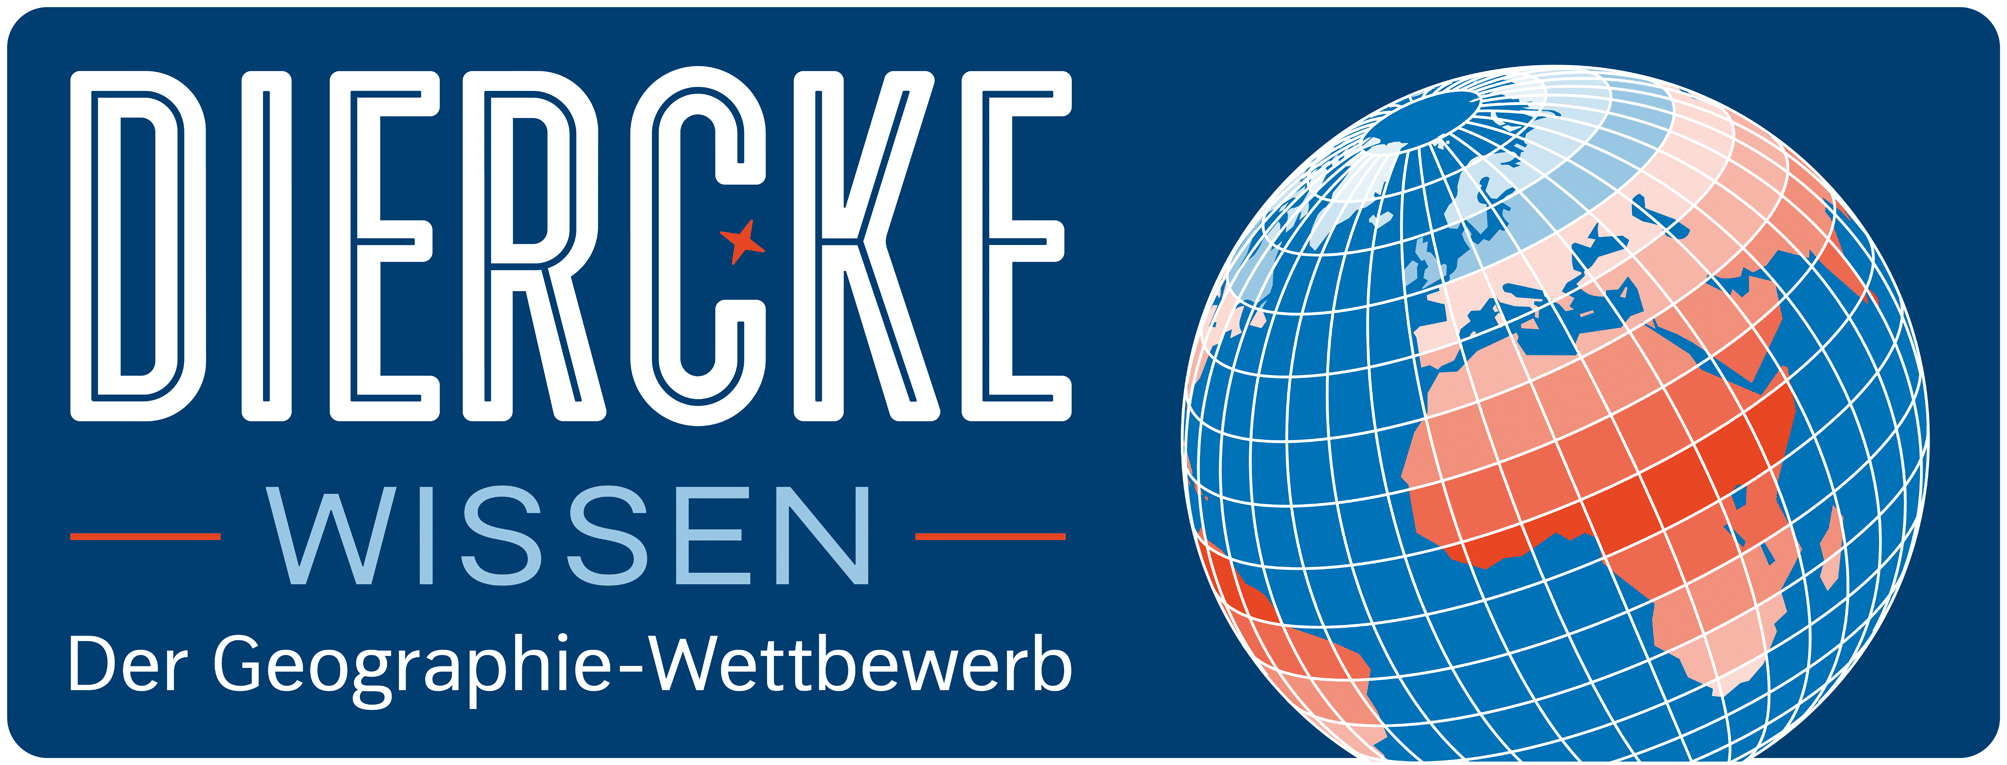 Diercke_WISSEN_Logo